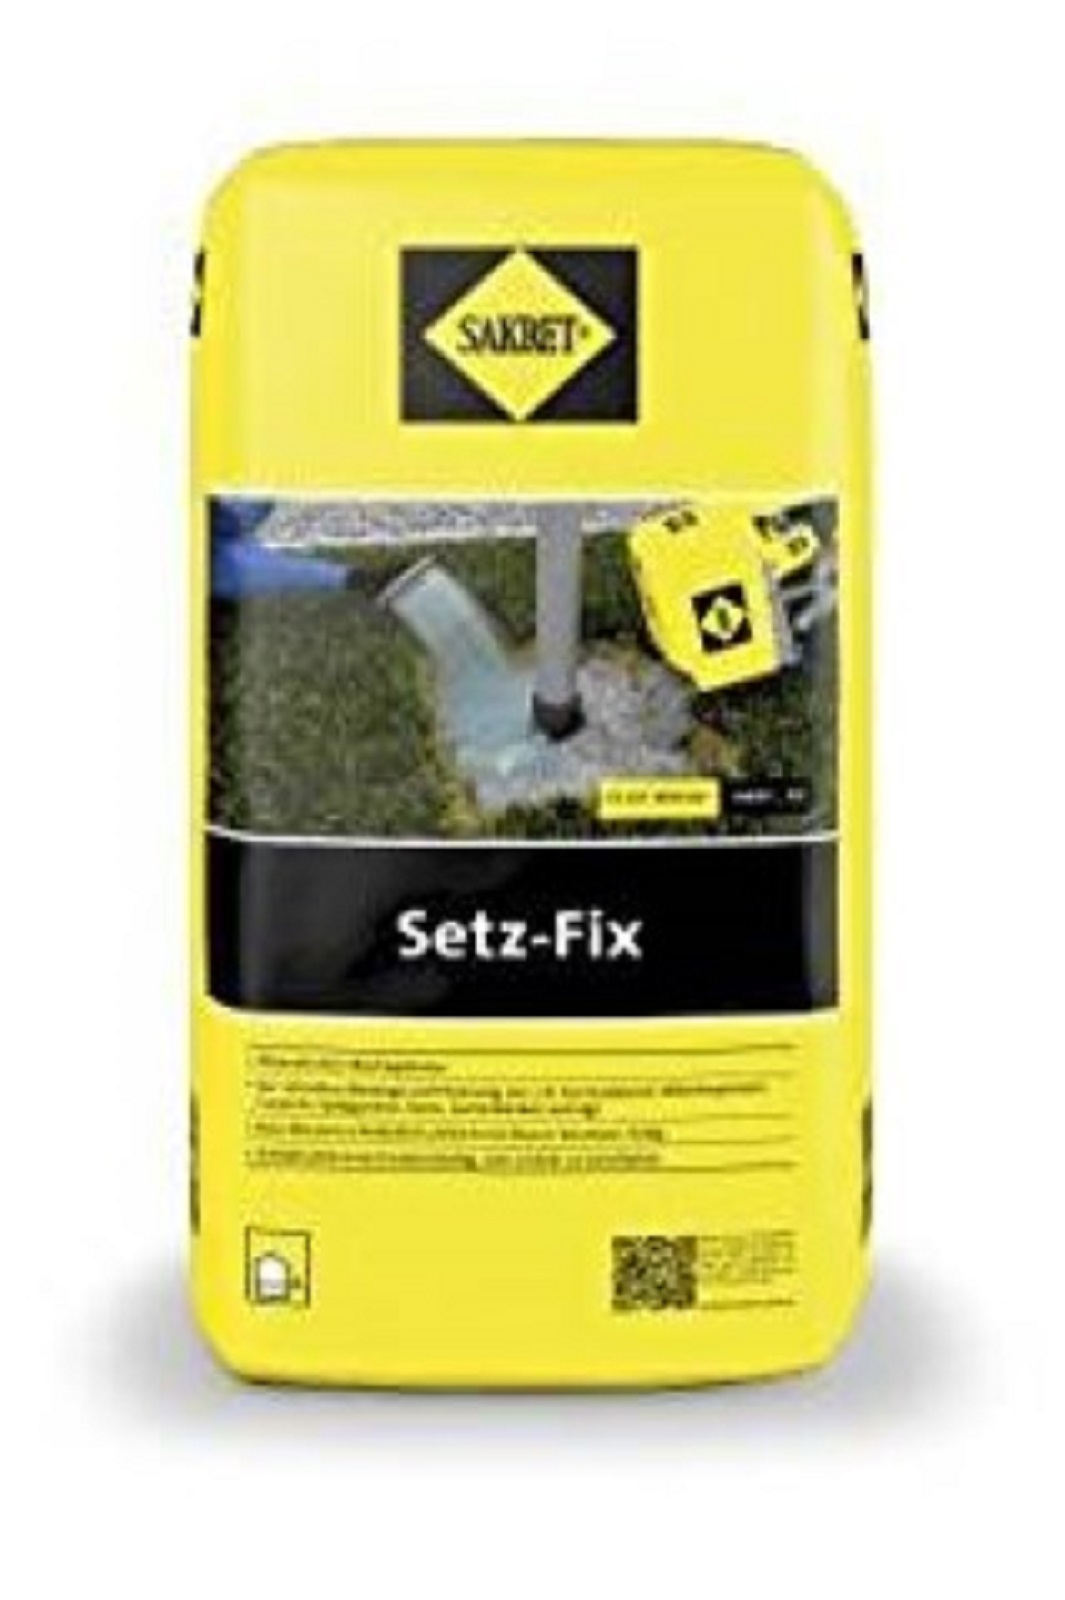 SAKRET Setz-Fix Schnellbeton Fertiggemisch für schnelle Montage 25 kg